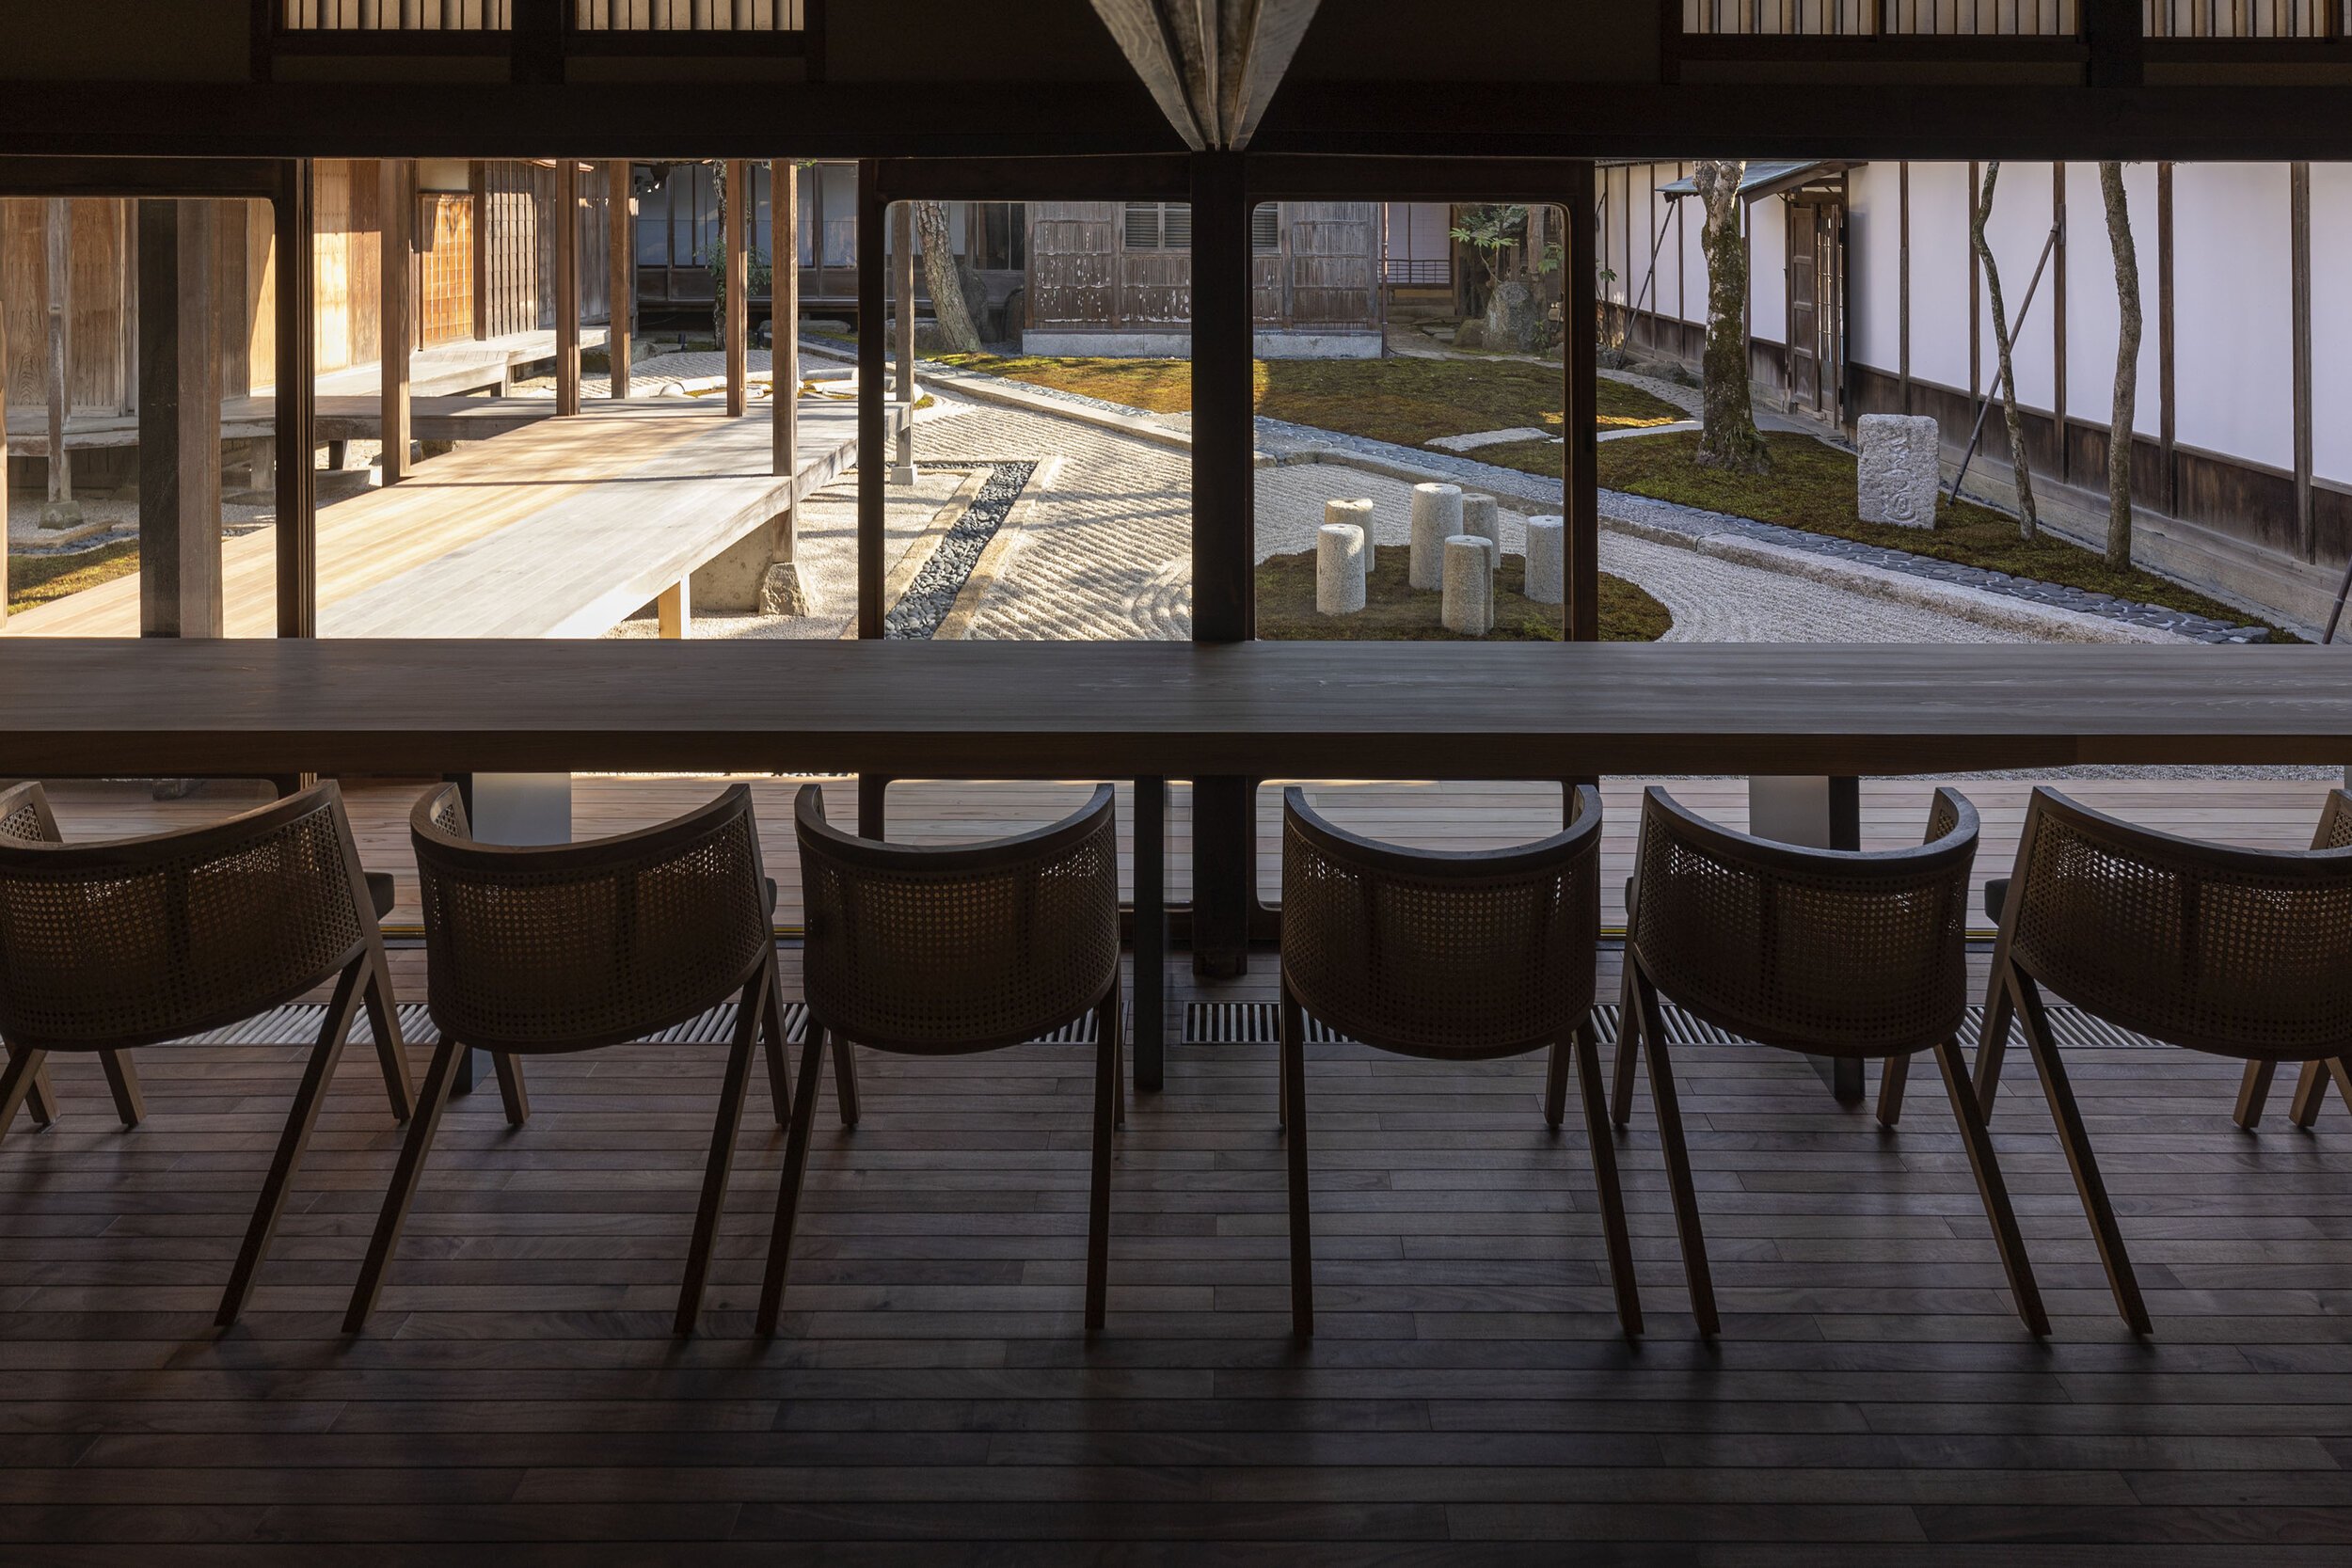  杉本博司と榊田倫之が率いる新素材研究所がデザインを手掛けた小田垣商店本店のカフェ 